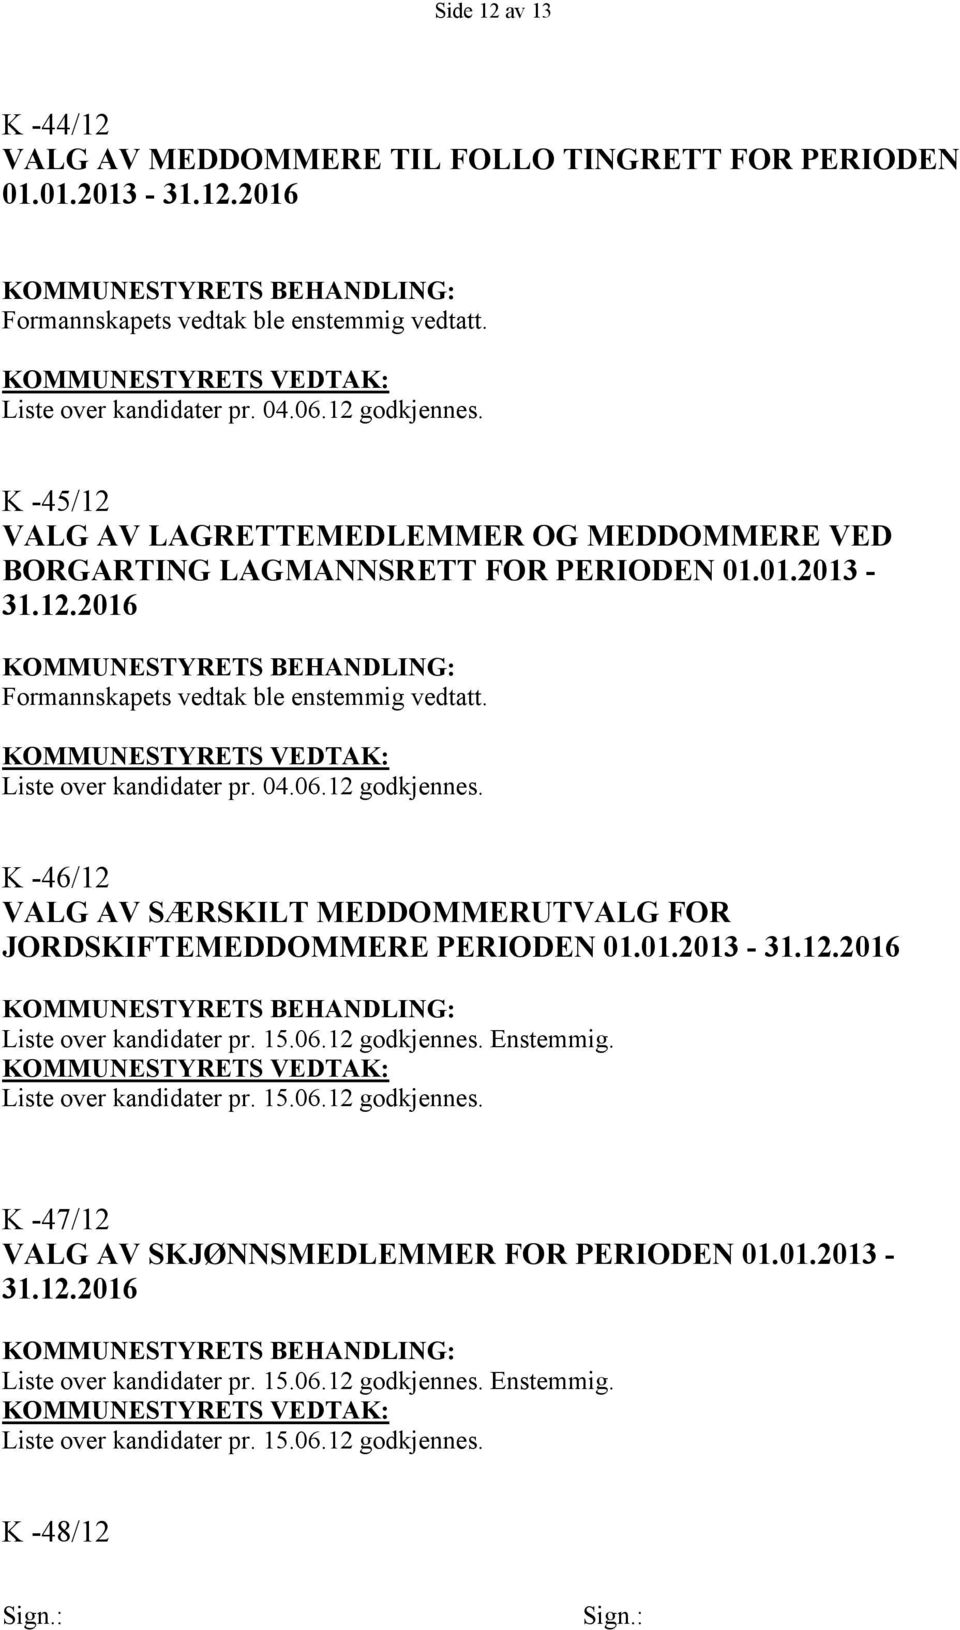 K -46/12 VALG AV SÆRSKILT MEDDOMMERUTVALG FOR JORDSKIFTEMEDDOMMERE PERIODEN 01.01.2013-31.12.2016 Liste over kandidater pr. 15.06.12 godkjennes. Enstemmig.